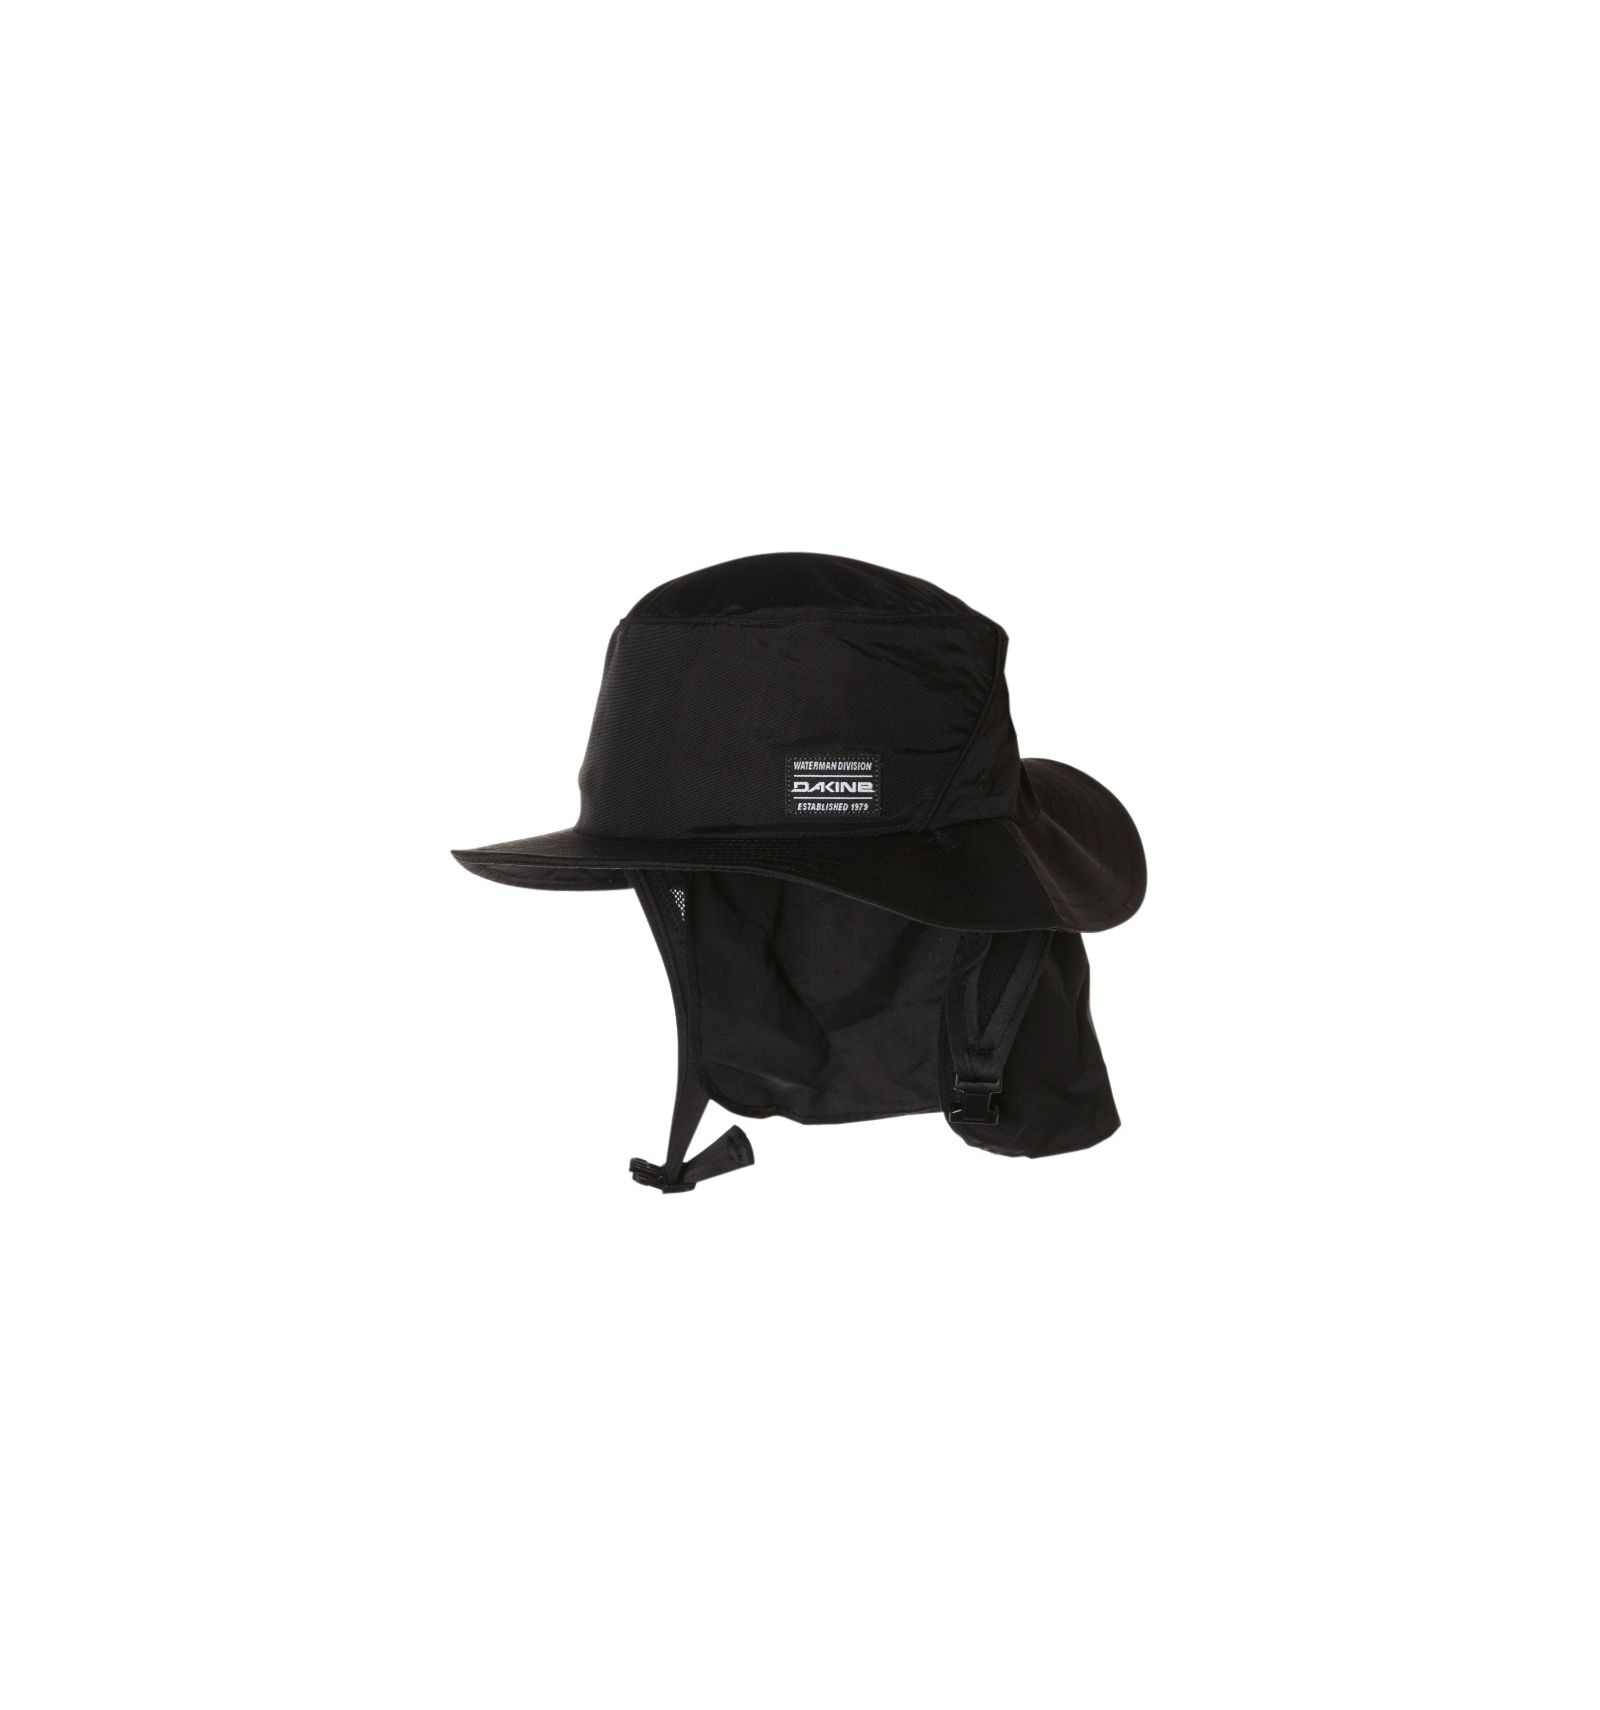 Dakine Indo Surf Hat Black Unisex Brim flips up for paddling Quick Dry Floating hat designed for water use 